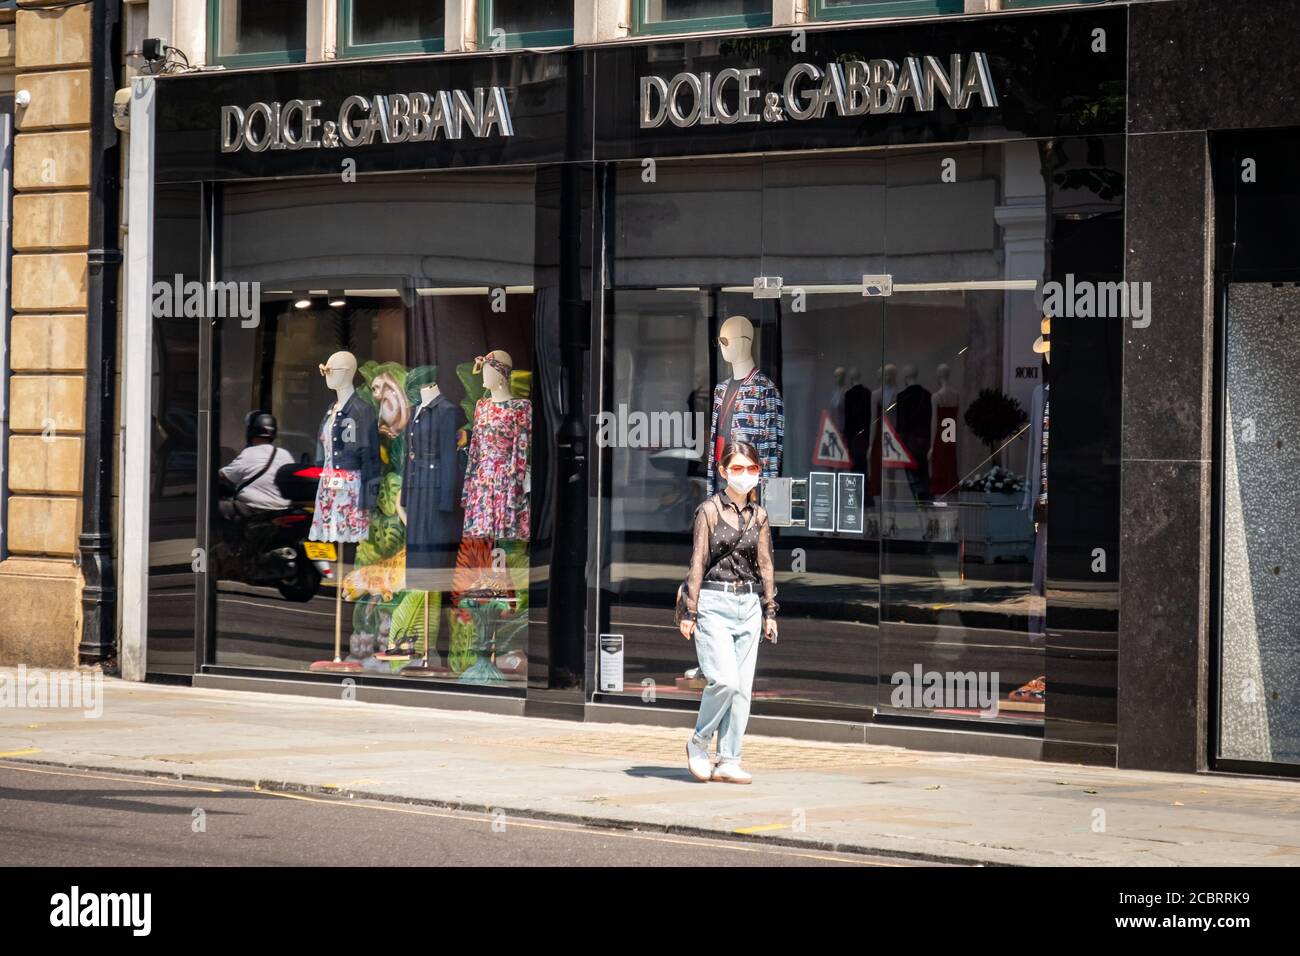 Londra - agosto 2020: Dolce & Gabbana in Sloane Street a Knightsbridge, una strada di lusso famosa per i suoi negozi di lusso e i marchi di moda Foto Stock